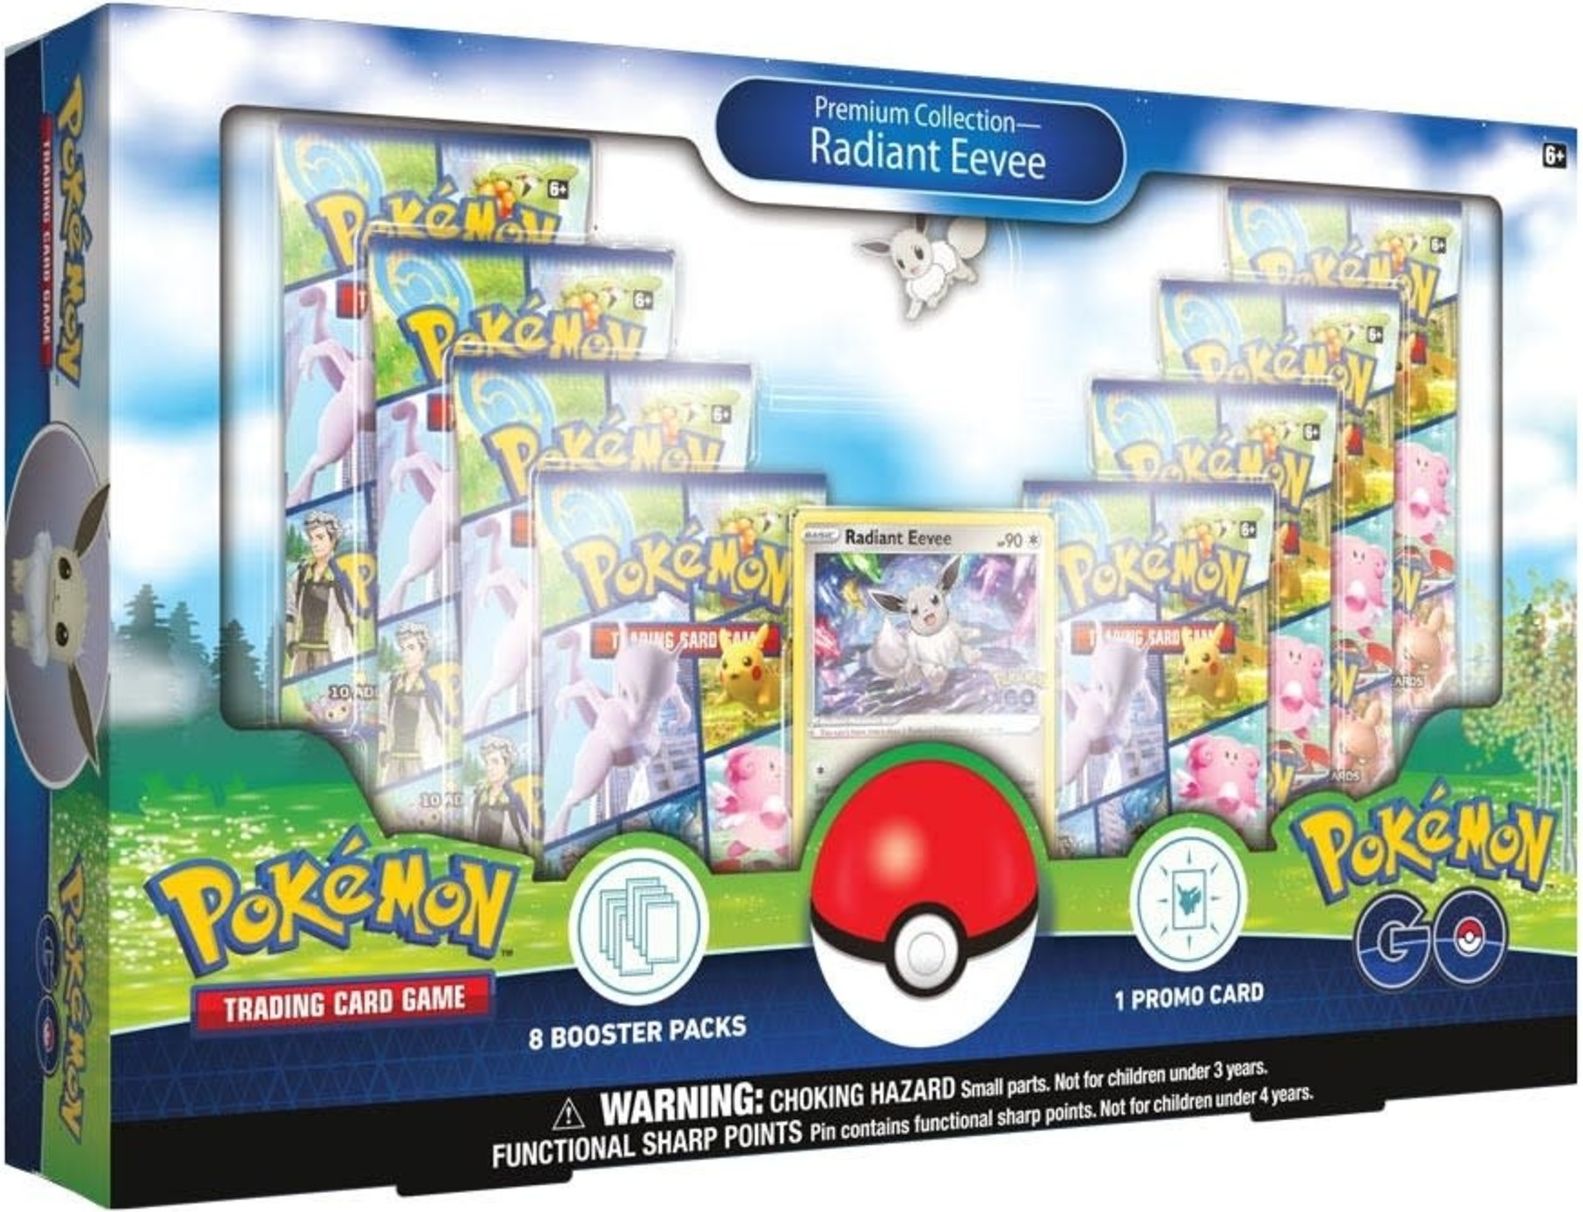 Nintendo Pokémon TCG: Pokémon GO Premium Collection - Radiant Eevee - obrázek 1